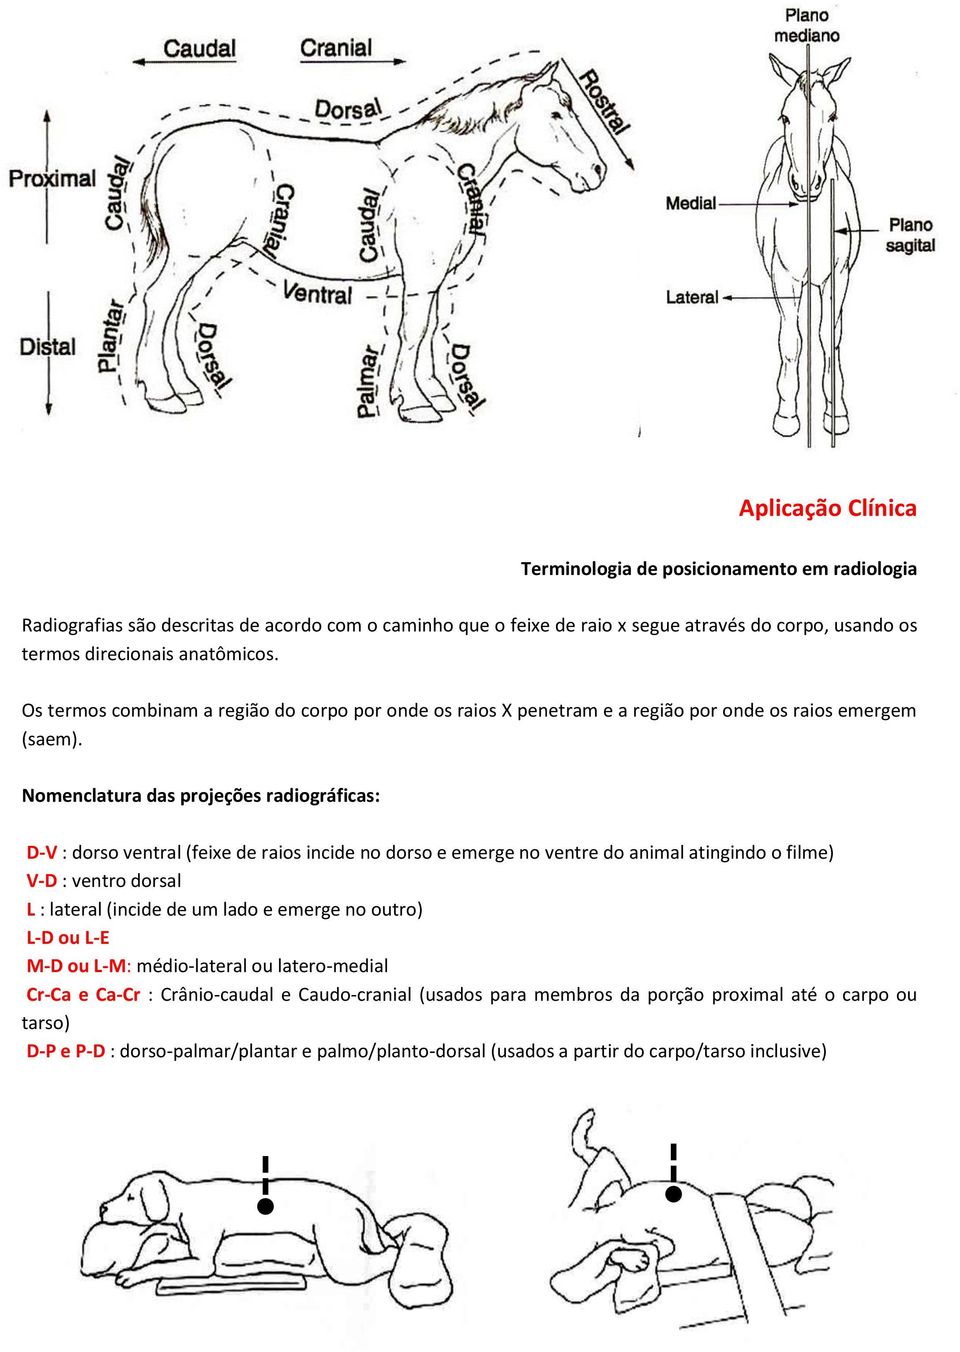 Nomenclatura das projeções radiográficas: D-V : dorso ventral (feixe de raios incide no dorso e emerge no ventre do animal atingindo o filme) V-D : ventro dorsal L : lateral (incide de um lado e